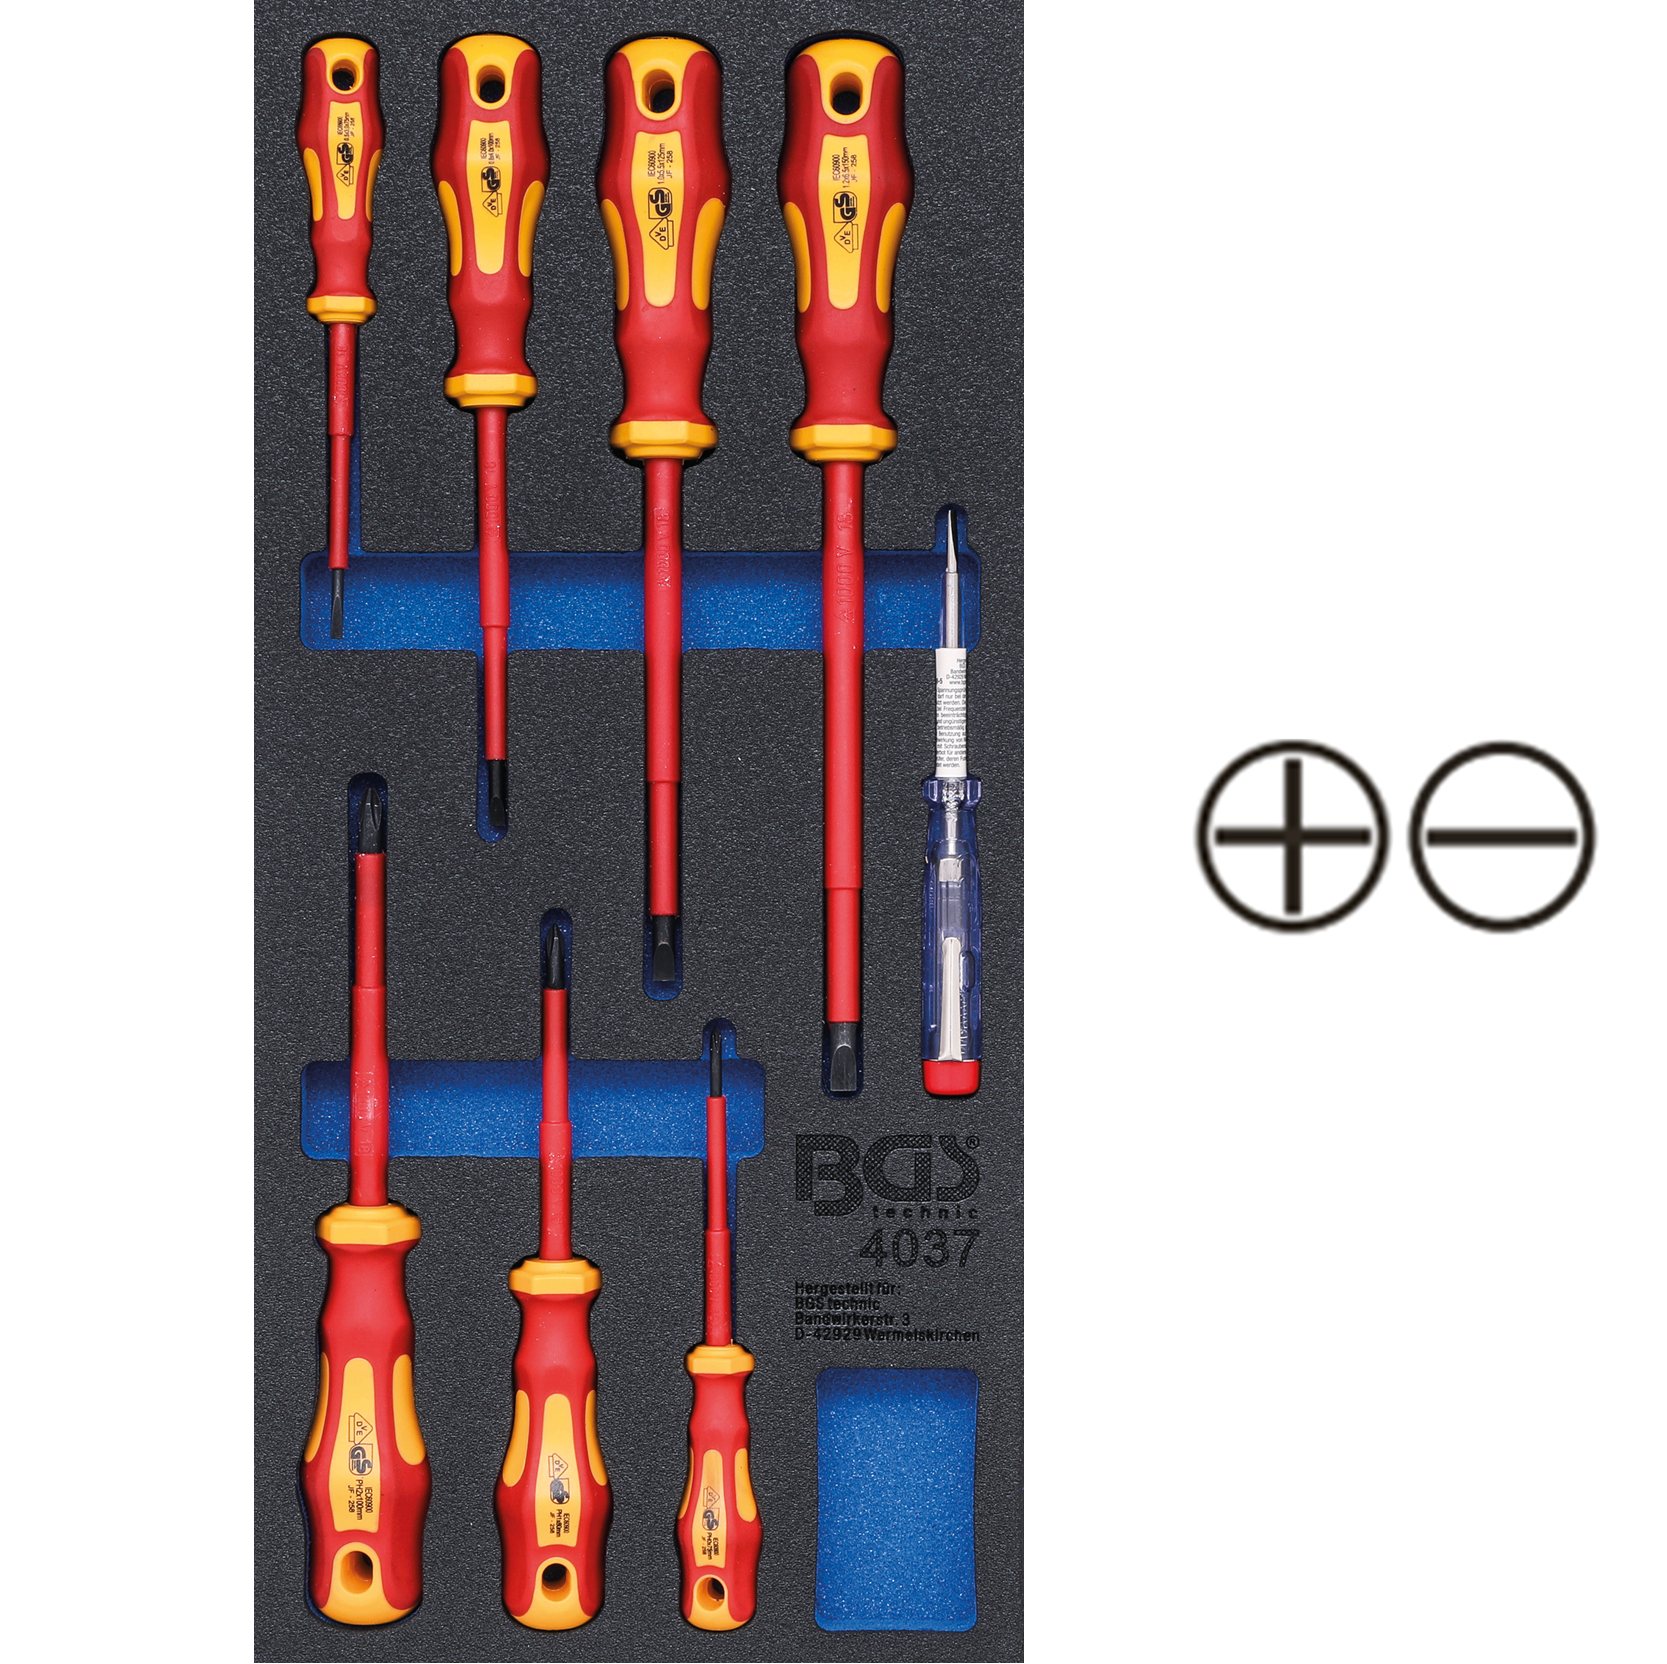 Modul 1/3 - skrutkovače elektrikárske VDE, ploché SL, PH, 8 dielov, BGS 4037